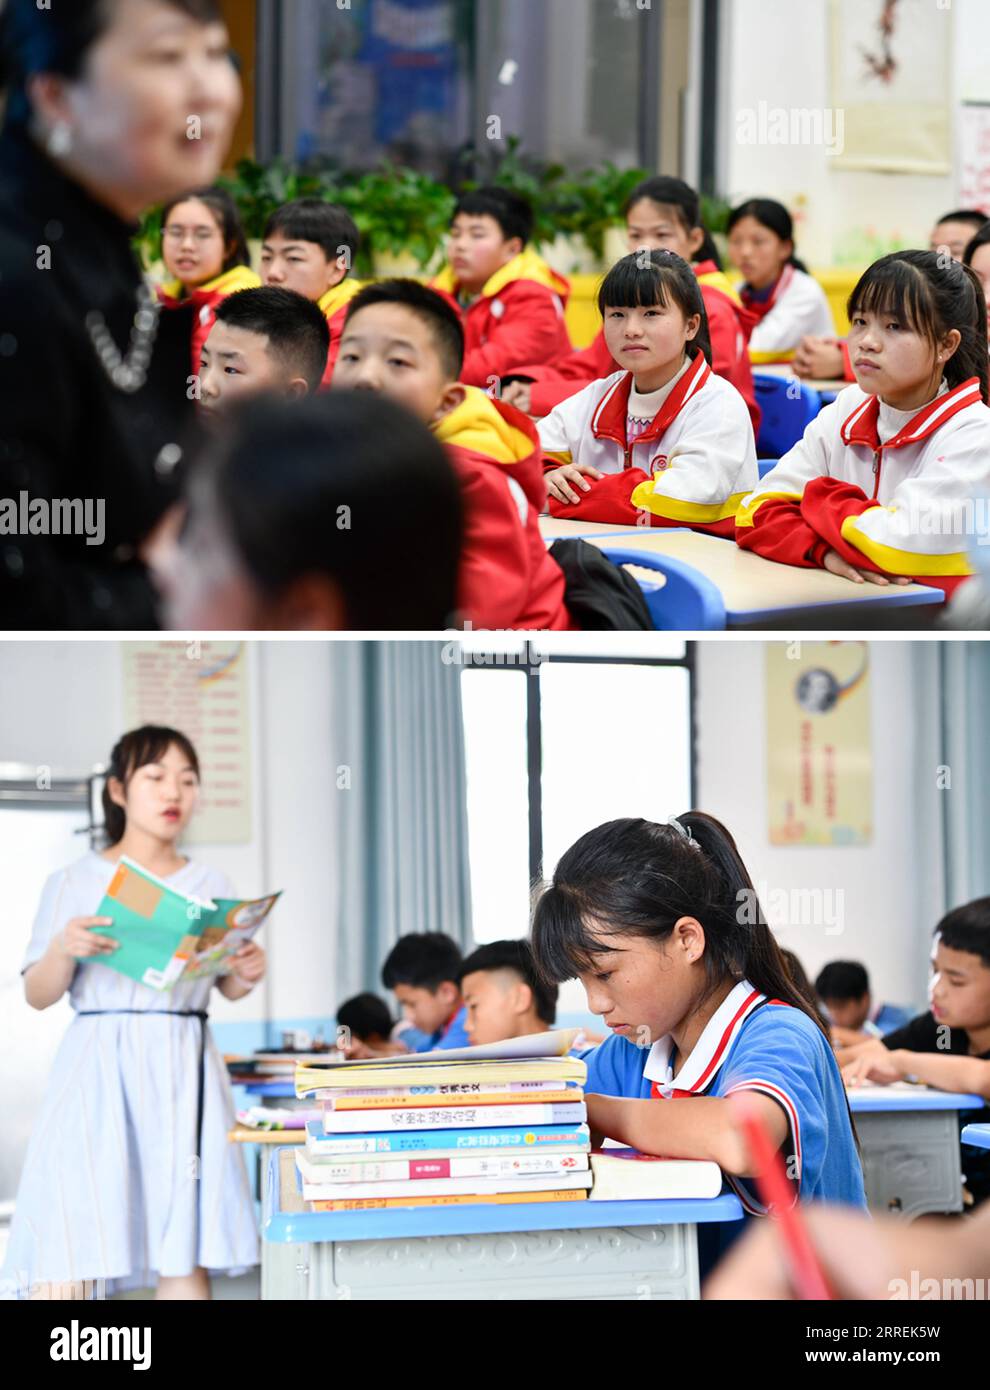 220305 -- GUIYANG, le 5 mars 2022 -- une photo combinée montre Pan Xuefei assistant à un cours à l'école secondaire Liduanfen à Guiyang, dans la province de Guizhou, dans le sud-ouest de la Chine, le 27 février 2022 UP et Pan Xuefei assistant à un cours à l'école primaire de Dadai dans le village de Dadai Miao, canton de Bingmei, Comté de Congjiang dans la préfecture autonome de Qiandongnan Miao et de Dong, province du Guizhou au sud-ouest de la Chine, 24 juin 2021. PAN Xuefei, une fille du groupe ethnique Miao du village de Dadai Miao dans le comté de Congjiang à Qiandongnan Miao et de la préfecture autonome de Dong dans la province du Guizhou du sud-ouest de la Chine, embrasse ses nouveaux sèmes Banque D'Images